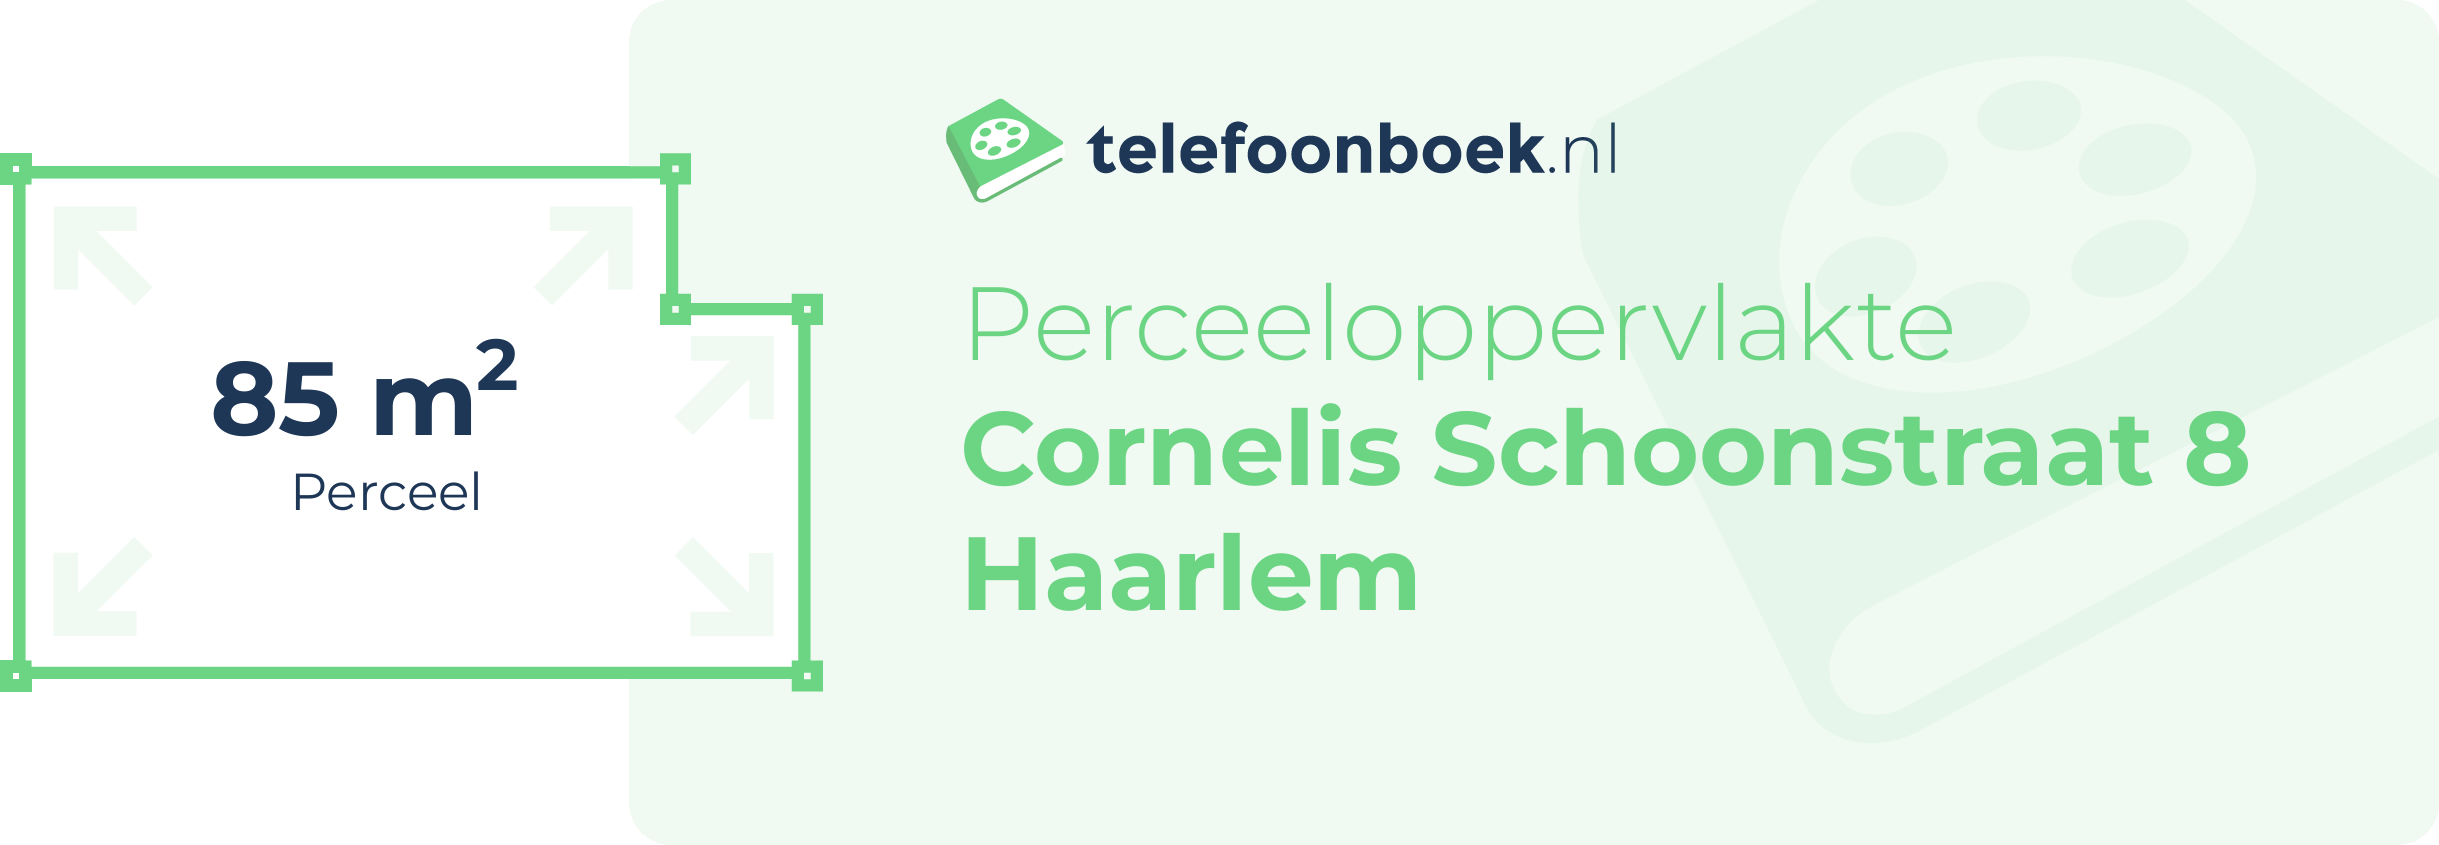 Perceeloppervlakte Cornelis Schoonstraat 8 Haarlem